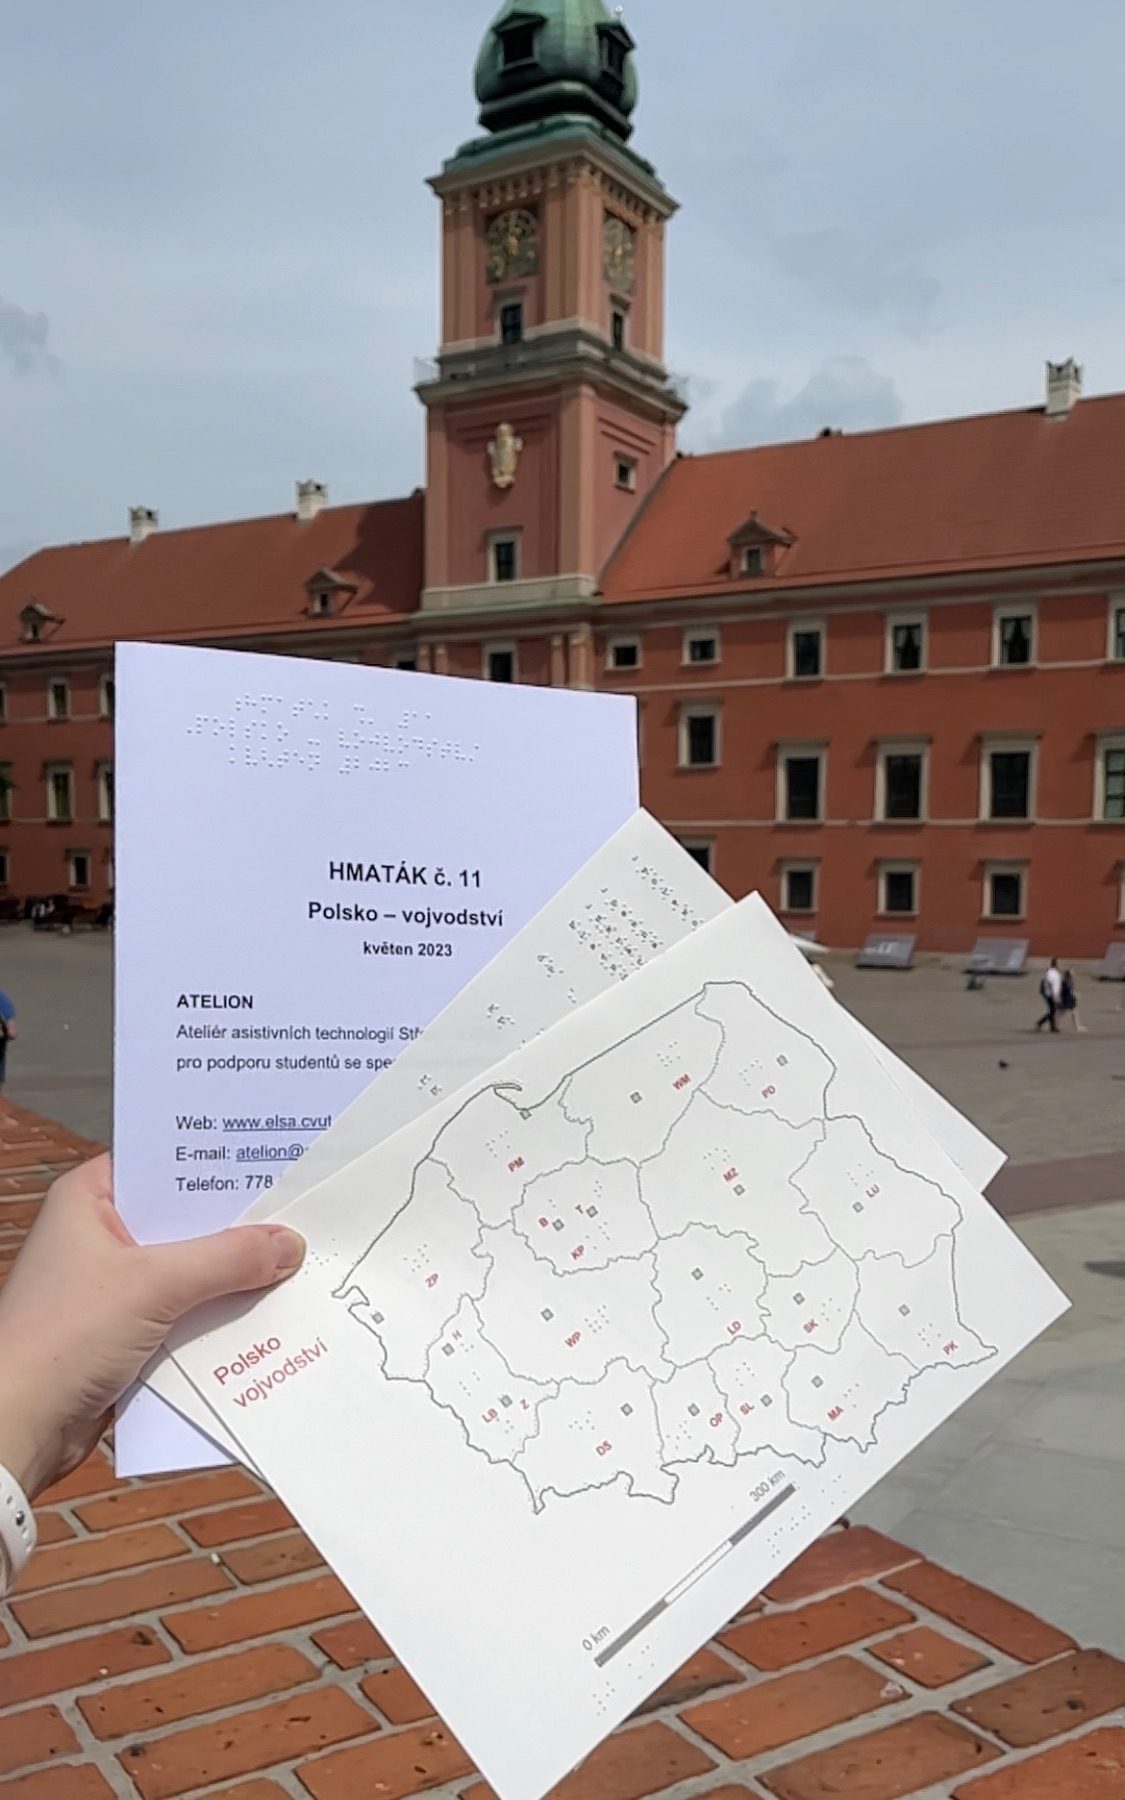 Obsah hmatáku č. 11 - desky, grafický list a seznam zkratek, na pozadí Zámecké náměstí ve Varšavě (Plac Zamkowy)